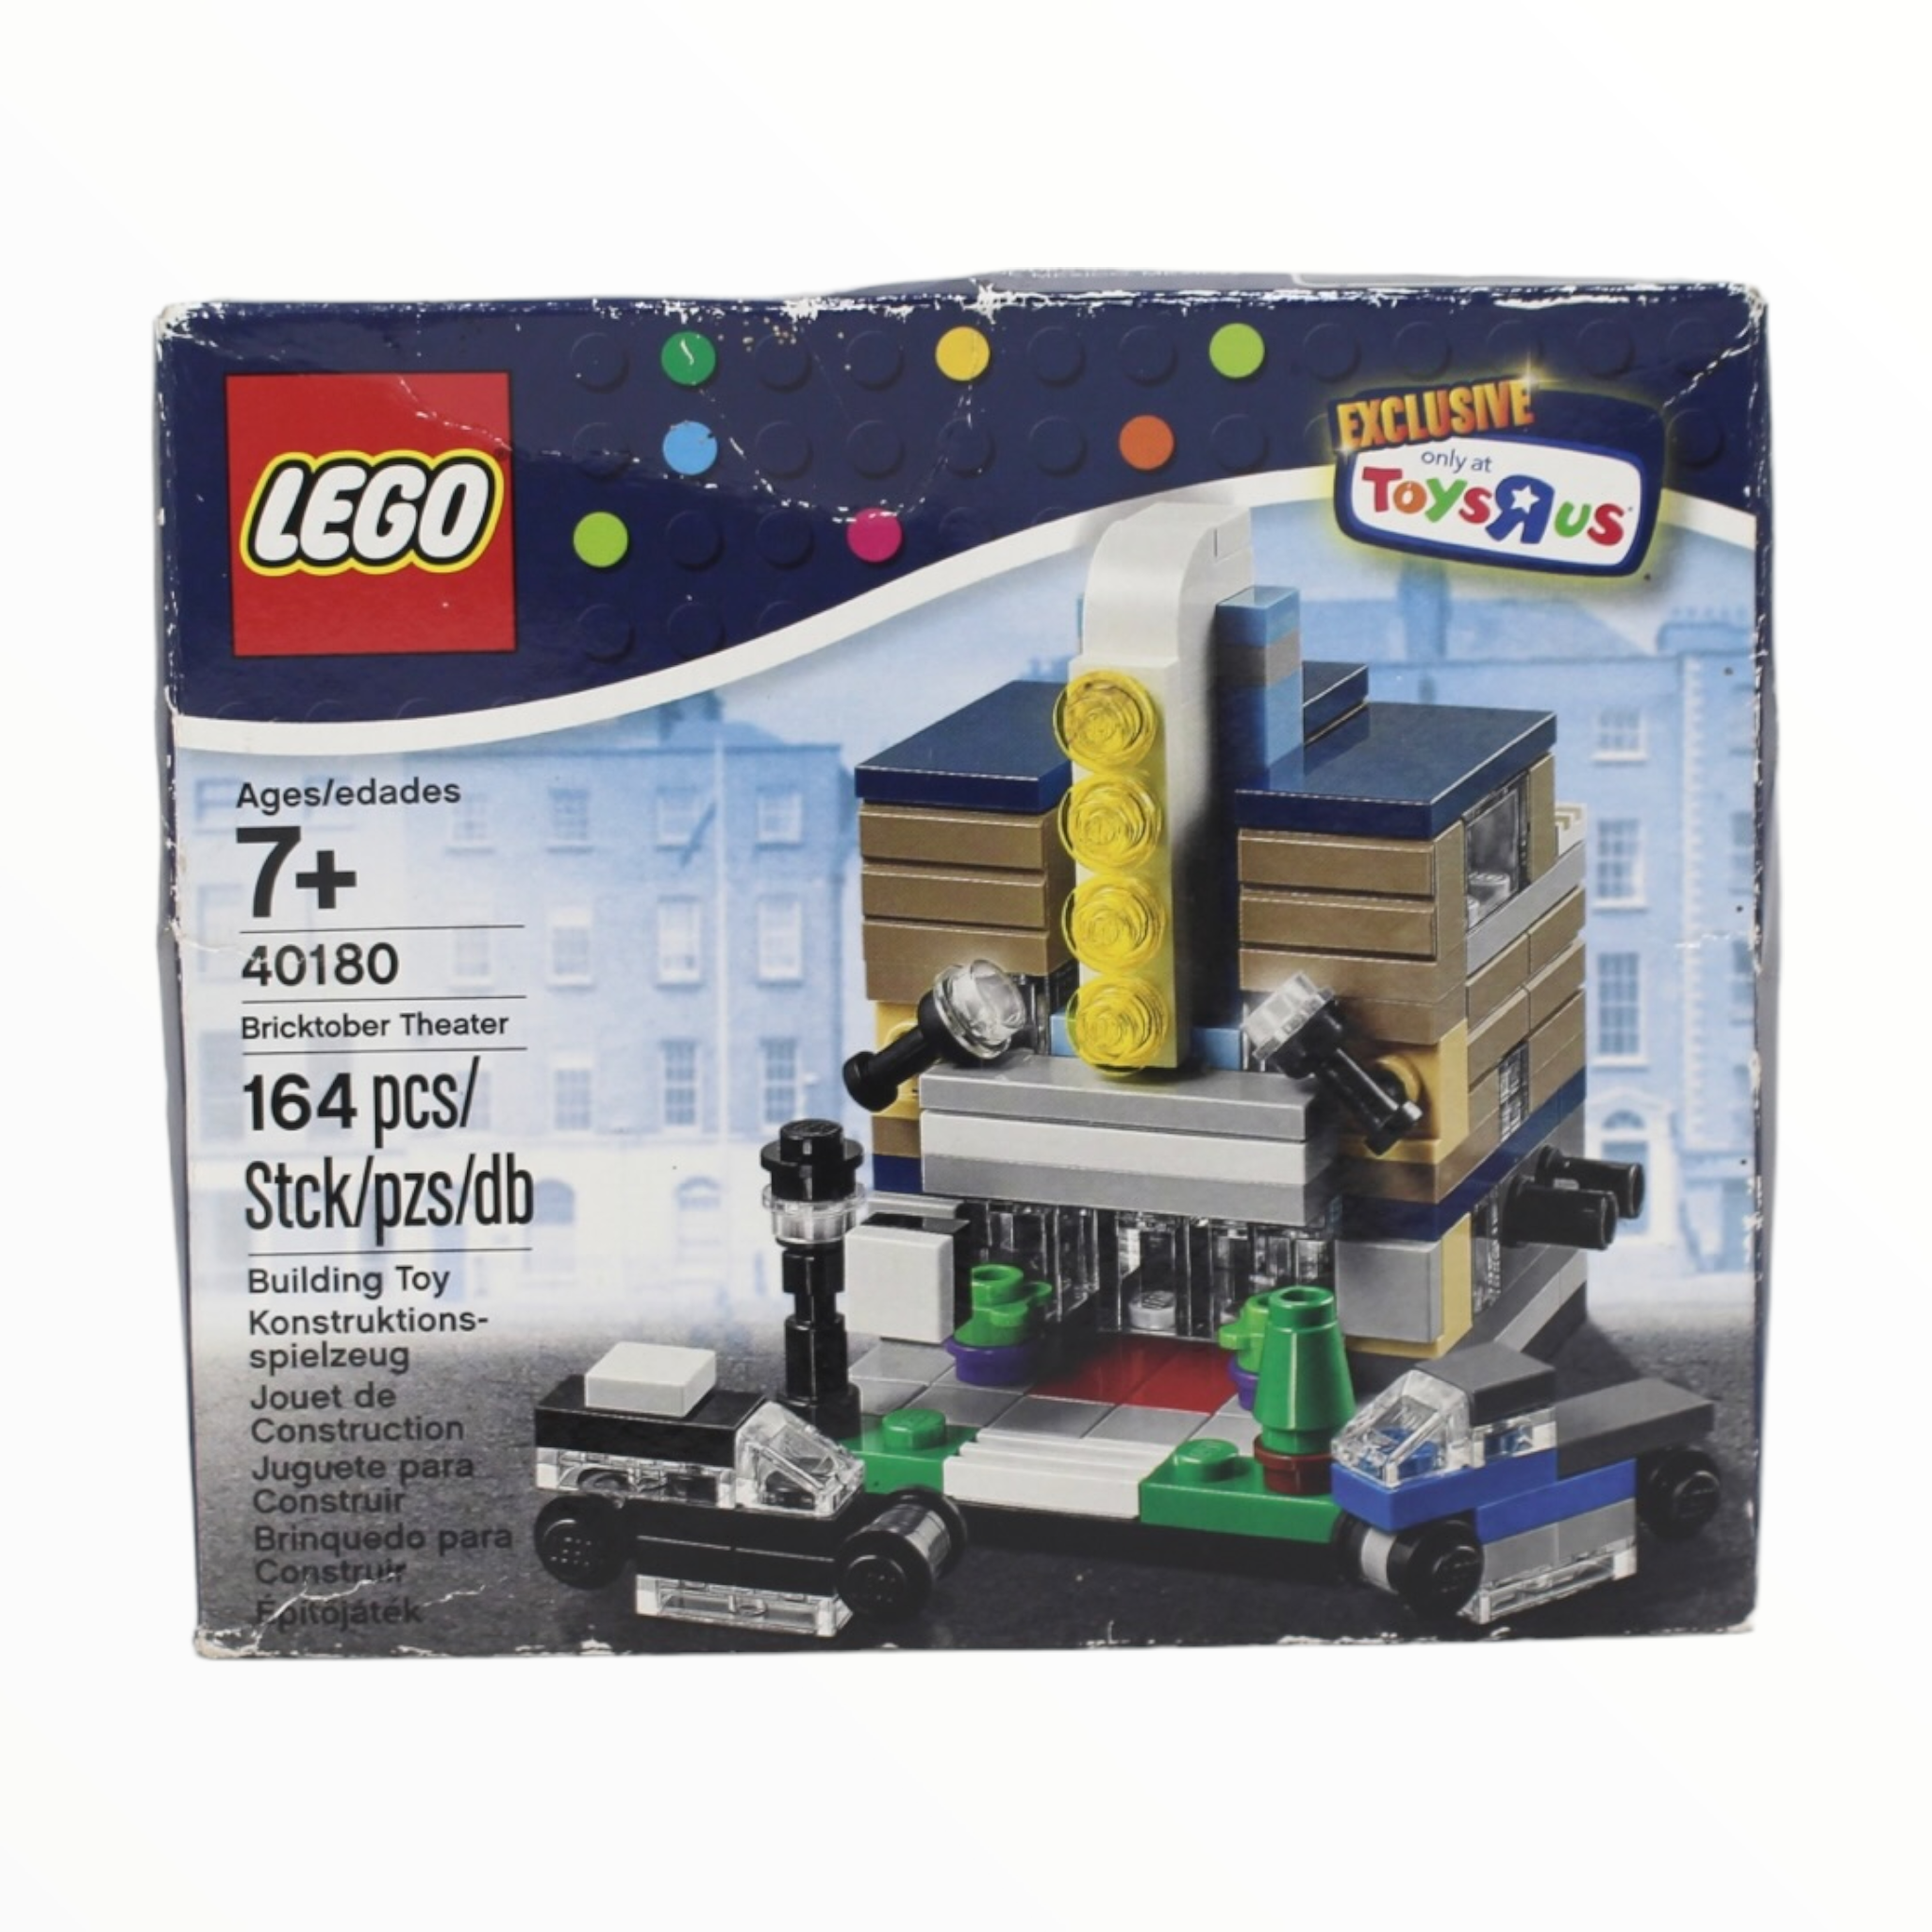 høflighed udskiftelig Vend tilbage Retired Set 40180 LEGO Bricktober Theater